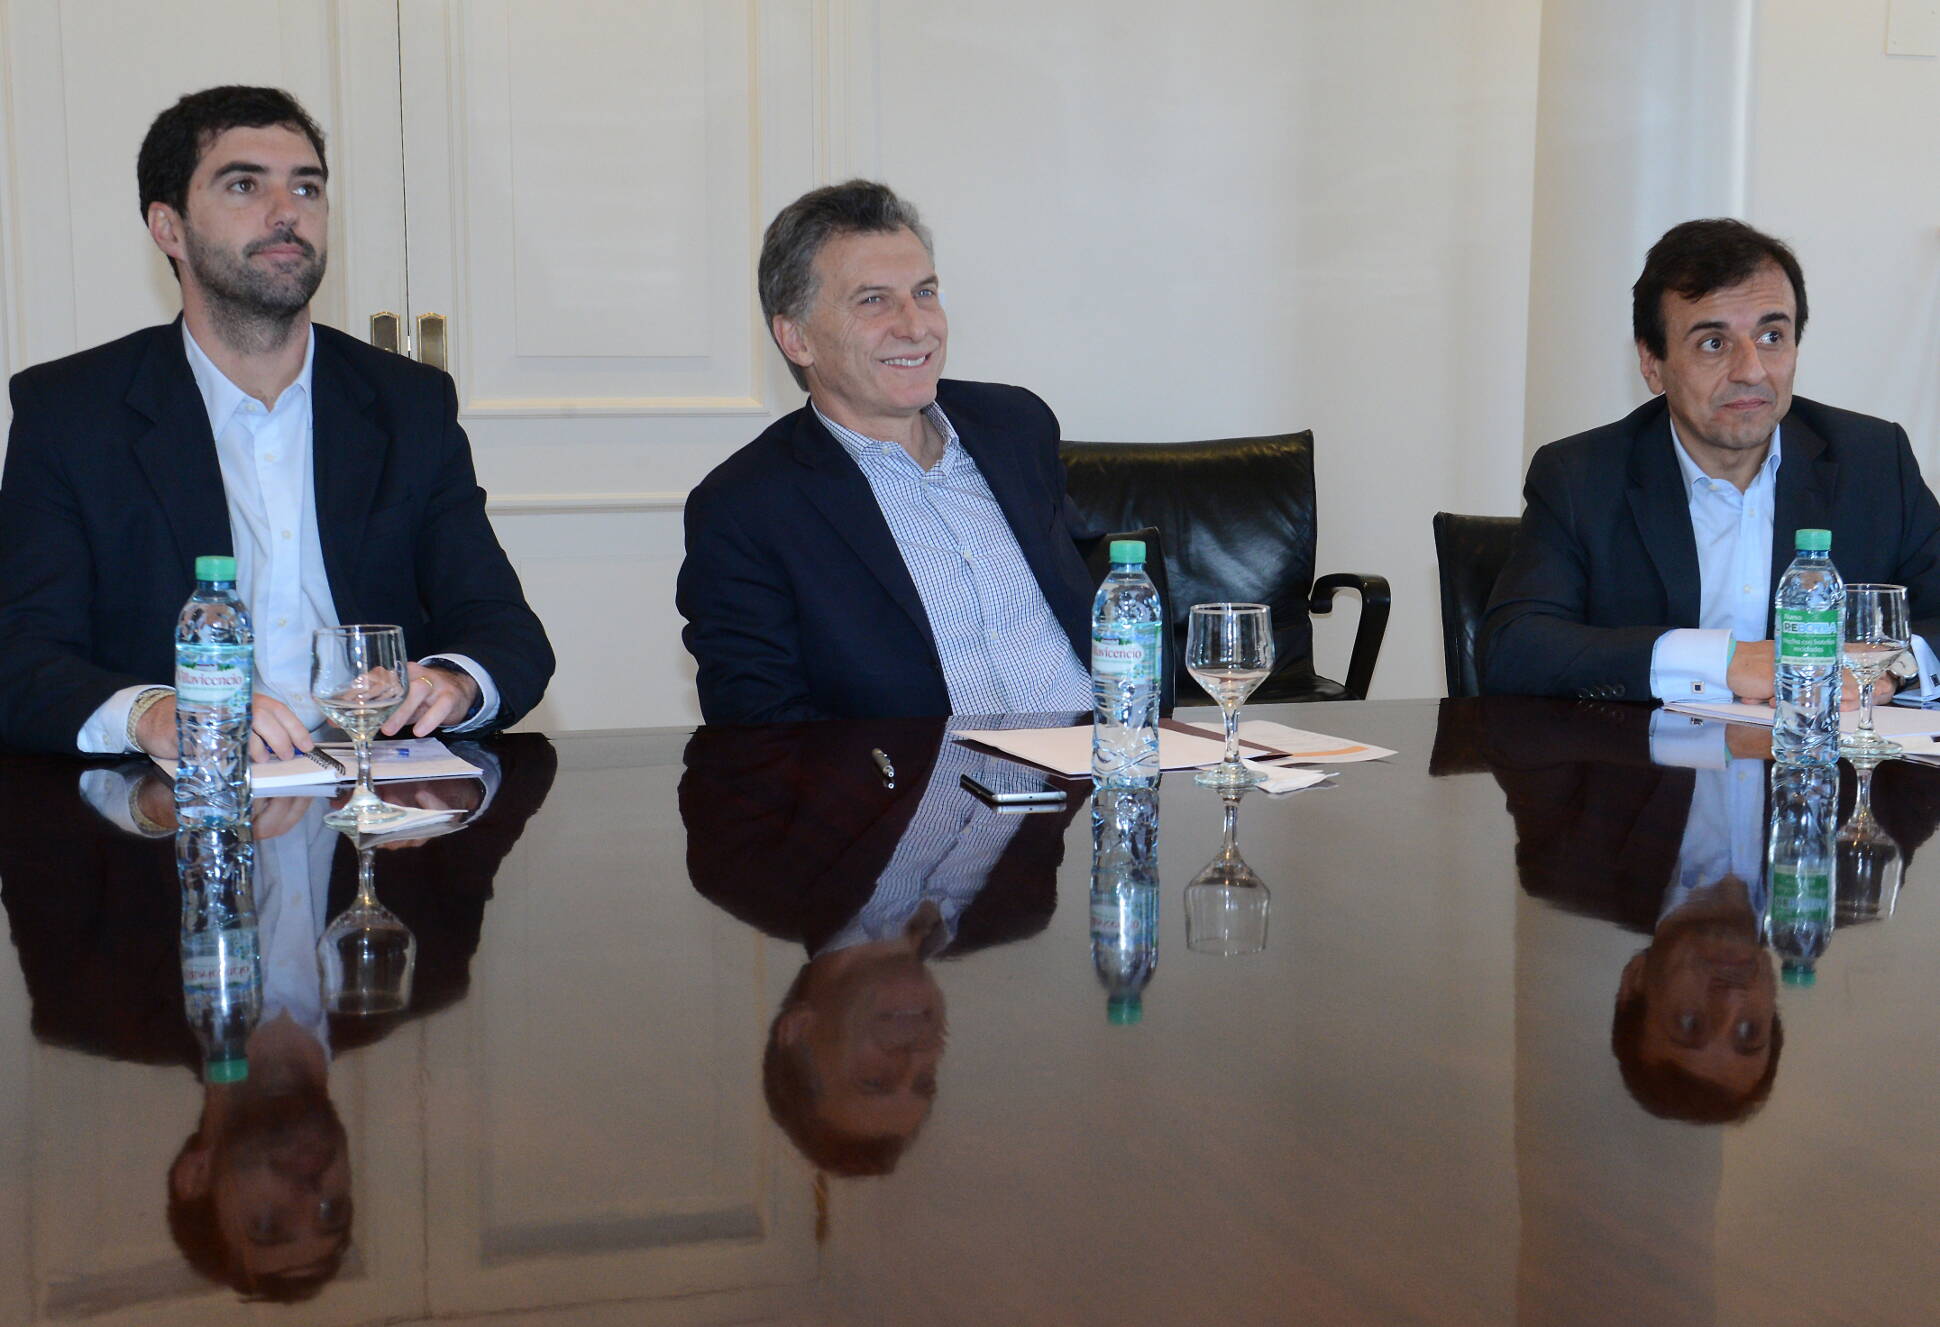 El presidente Macri mantuvo una reunión de seguimiento de gestión de la ANSES